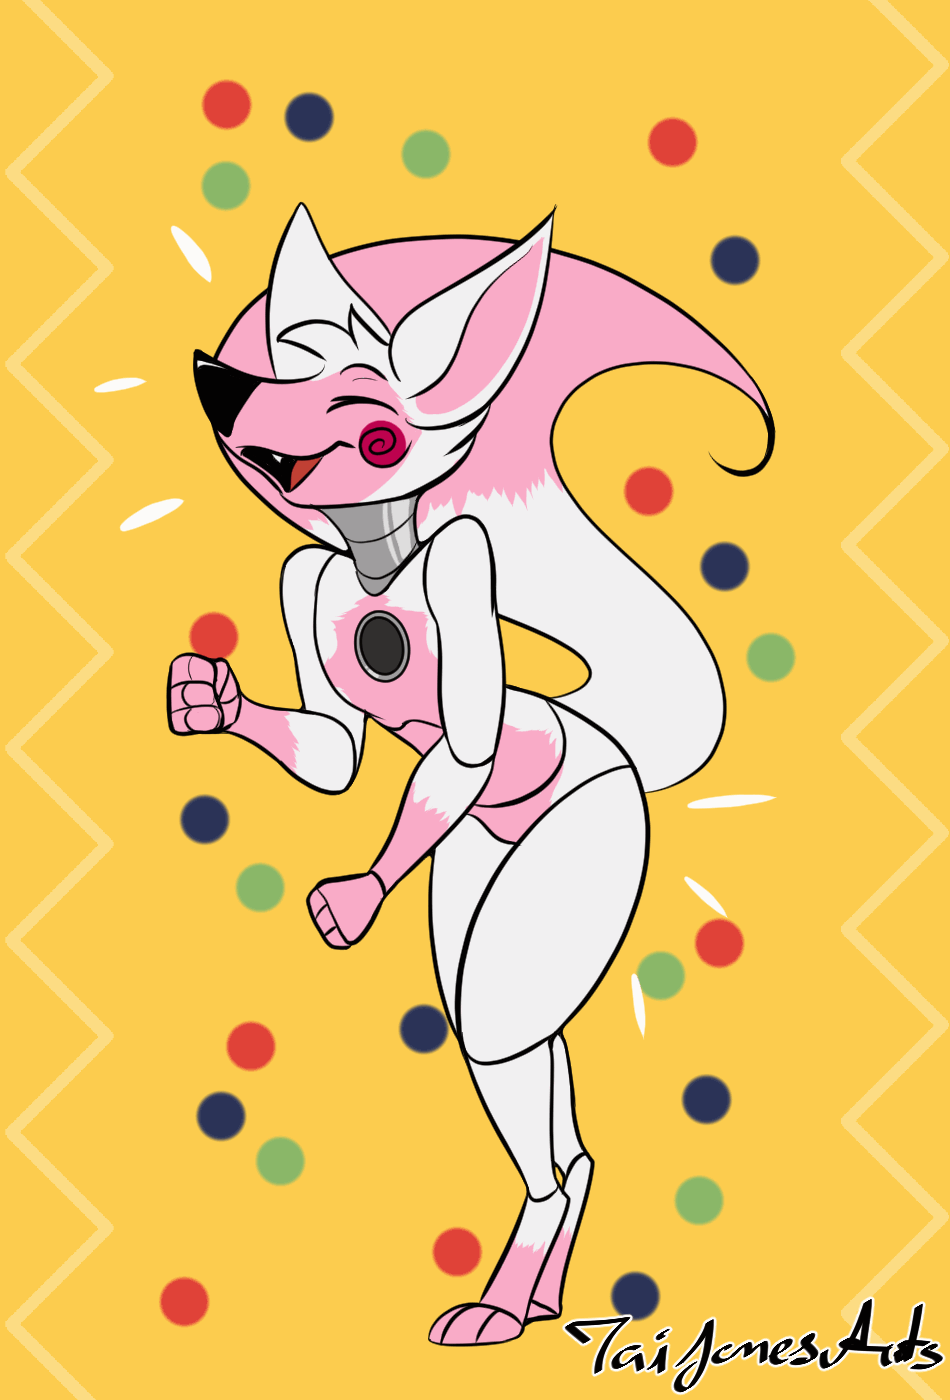 [Personal] Quinn - Dance! Dance, Foxy!